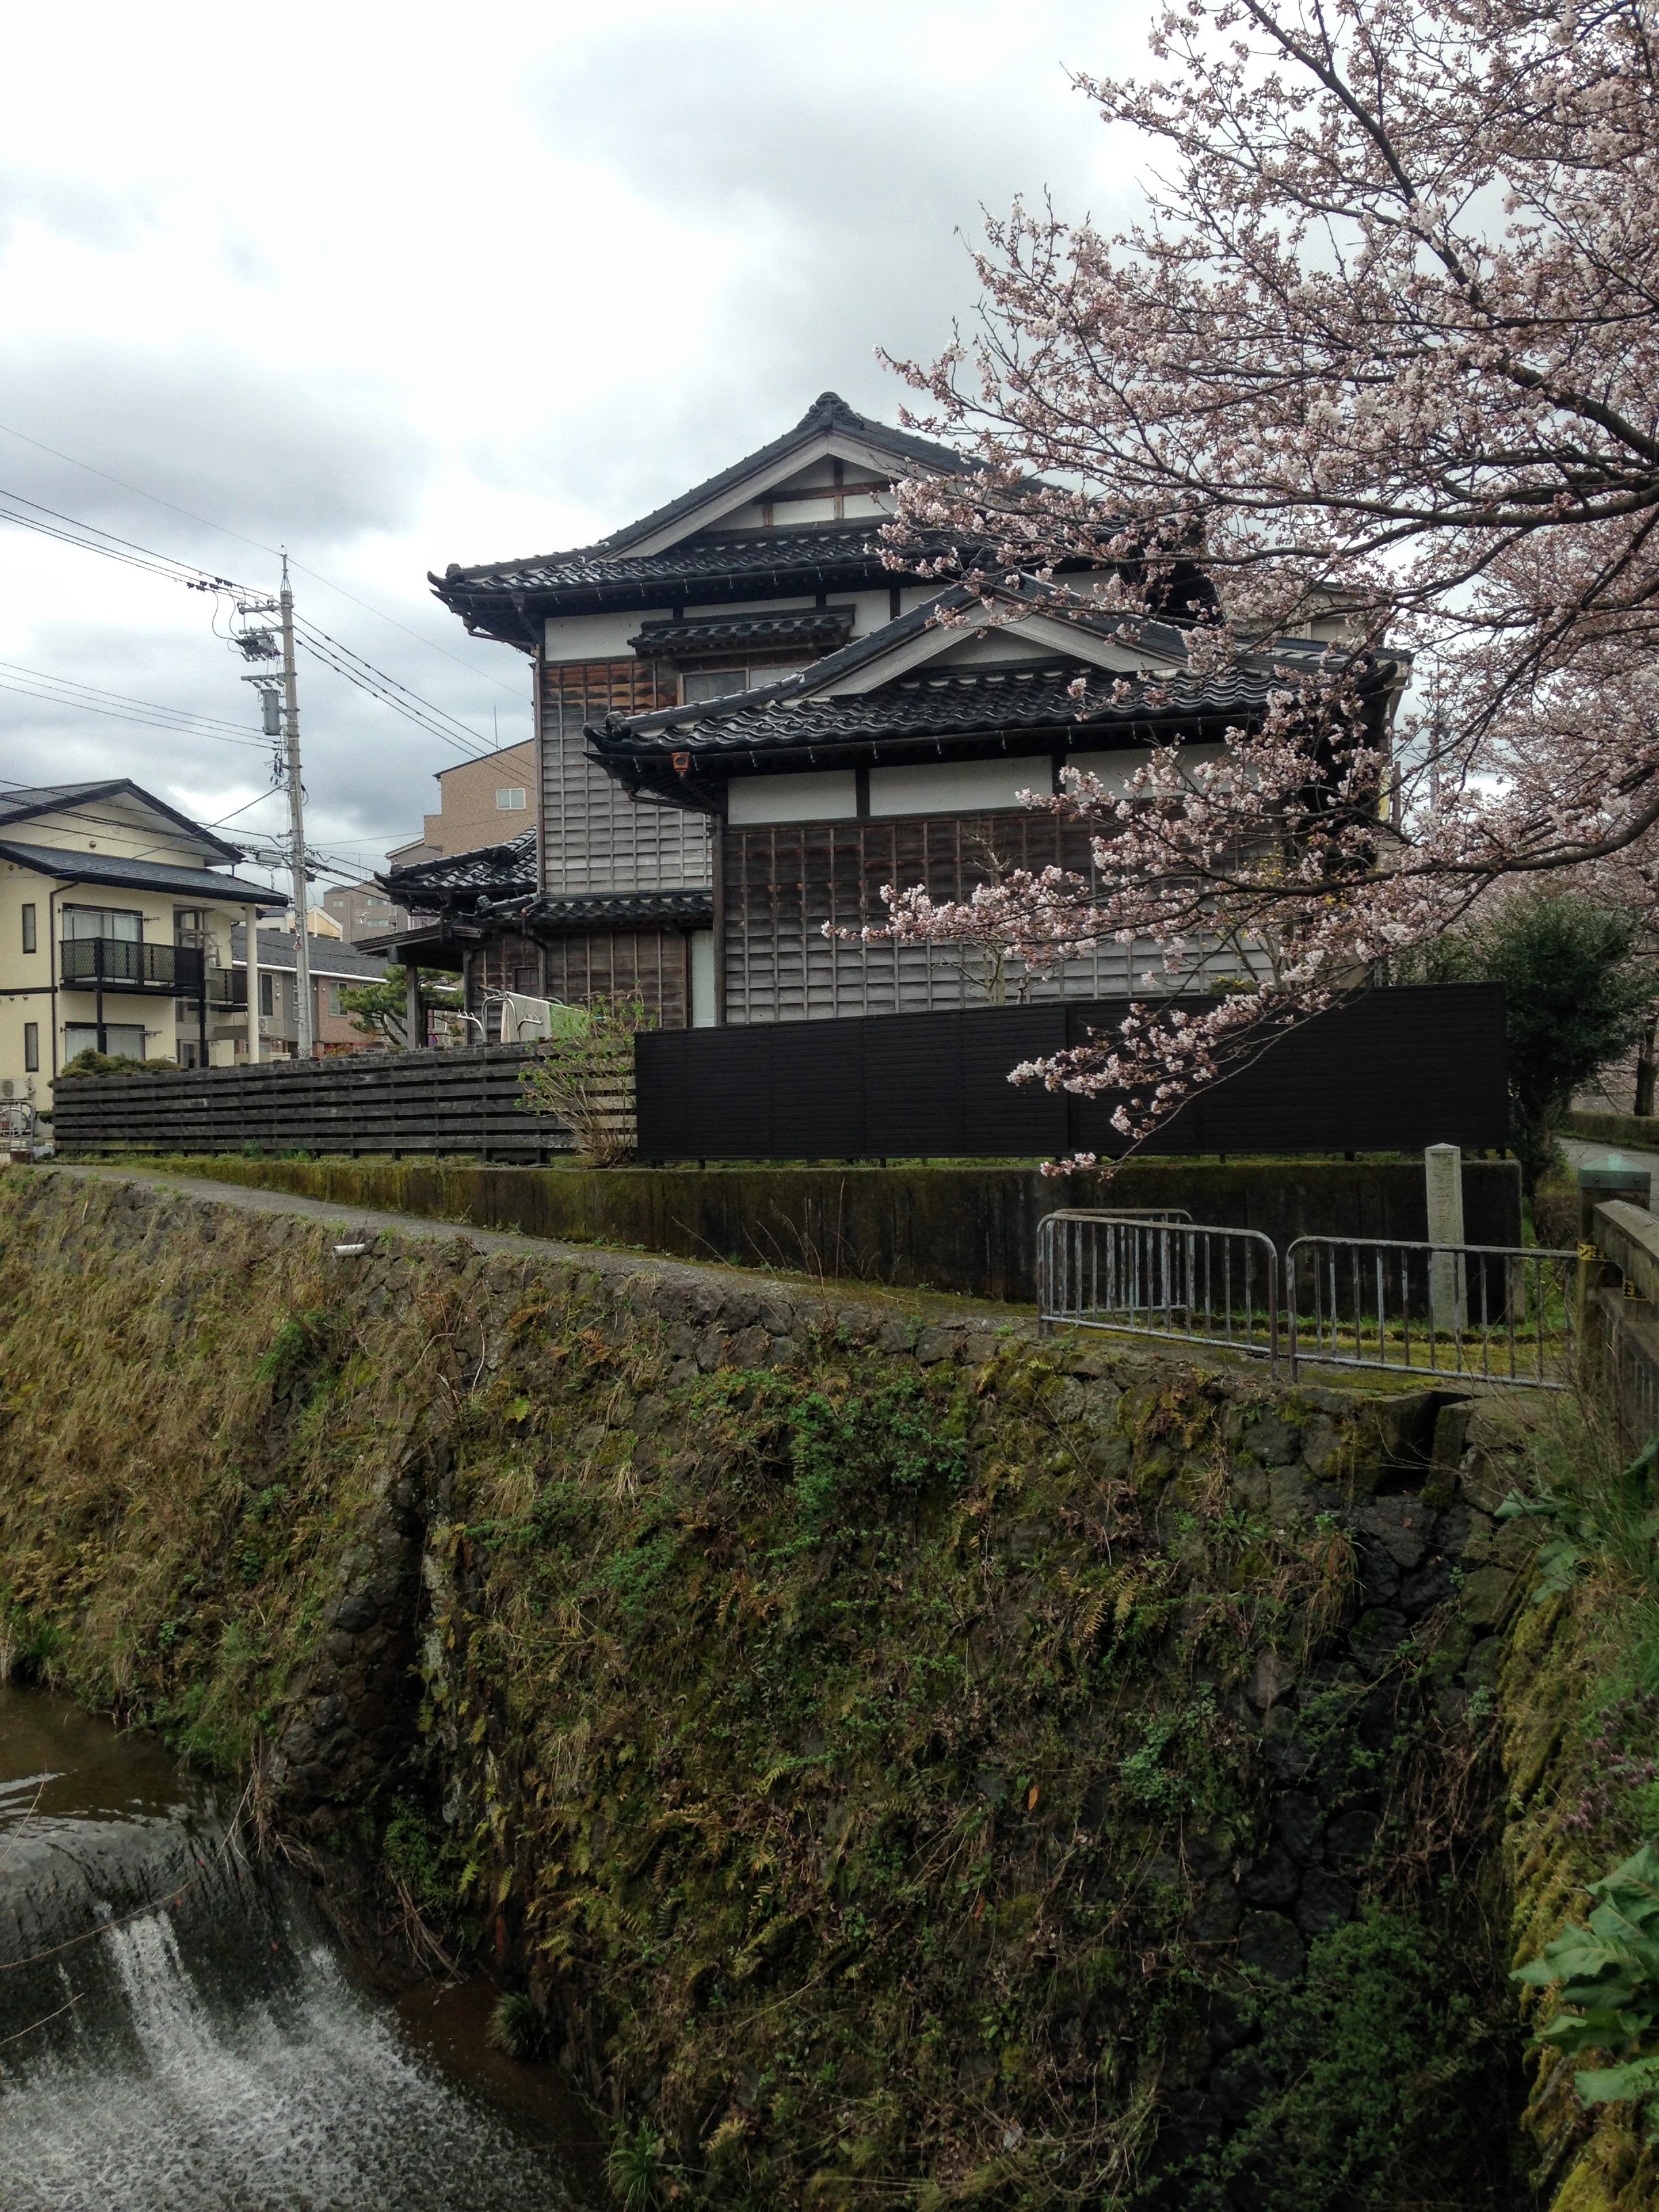 Kanazawa Hanami Cherry Blossom Guide